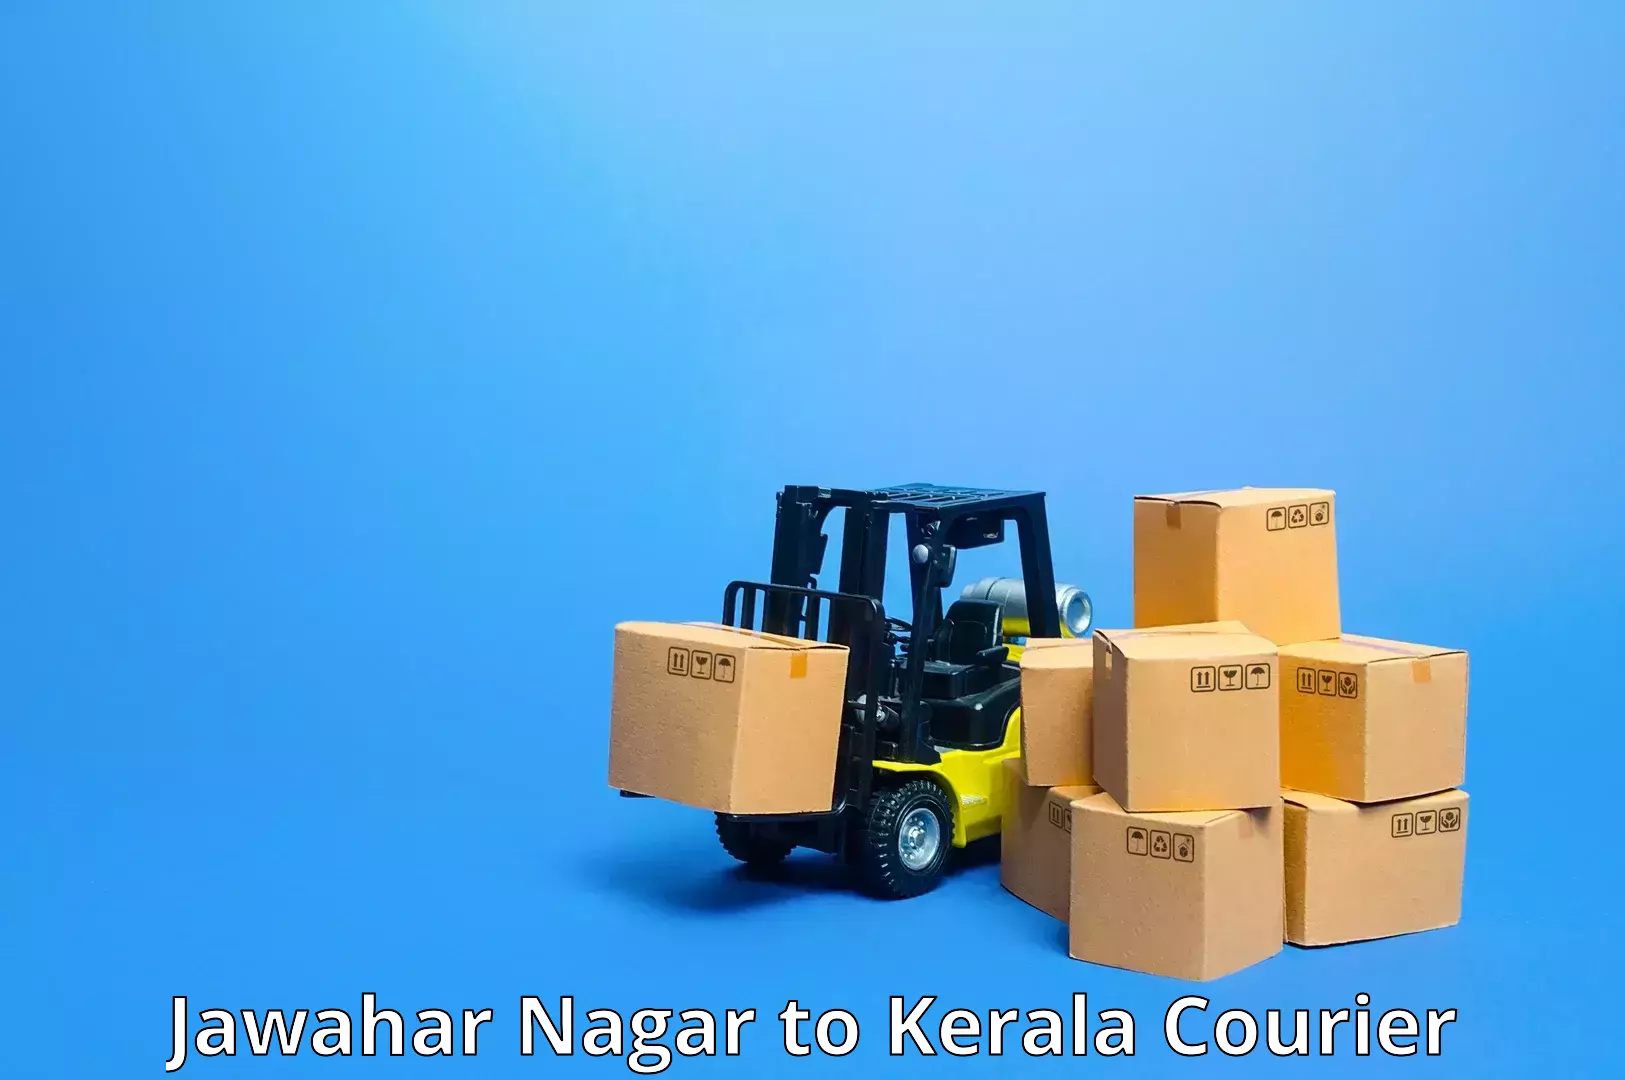 Courier service booking Jawahar Nagar to Kerala